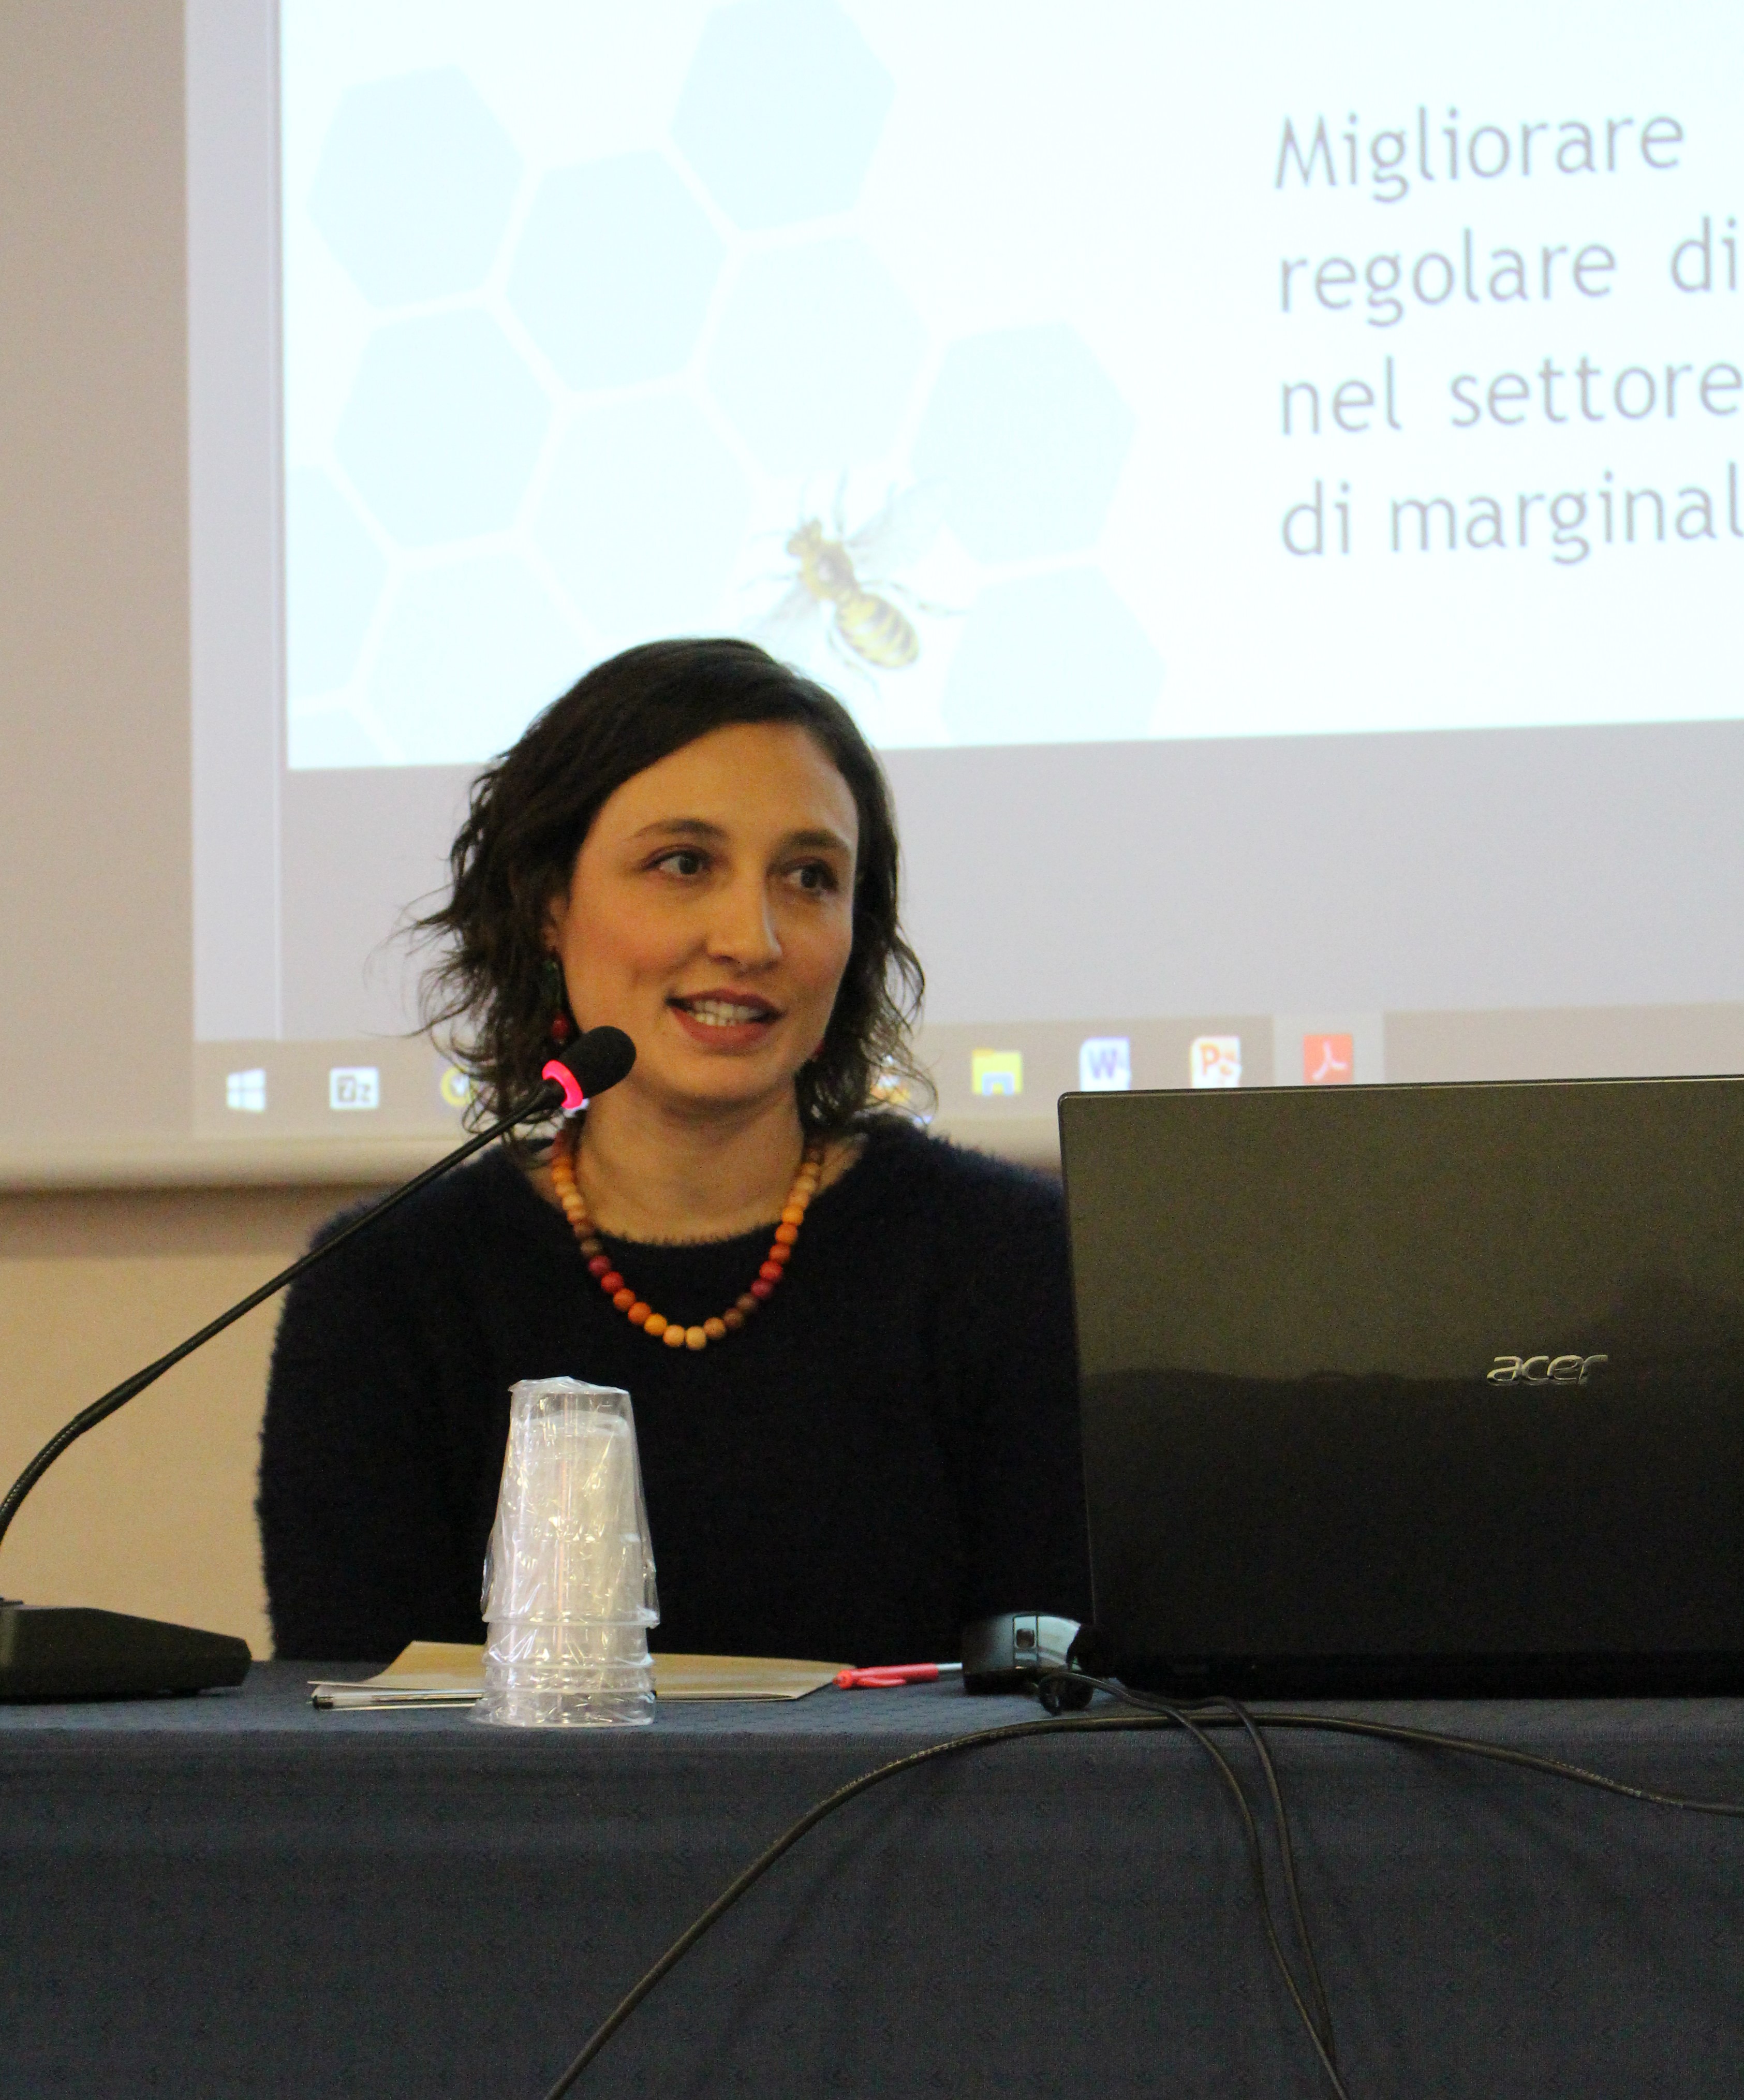 Bee My Job: il modello della buona inclusione. A Roma con l’UNHCR per dialogare con i Ministeri e le realtà impegnate in percorsi virtuosi